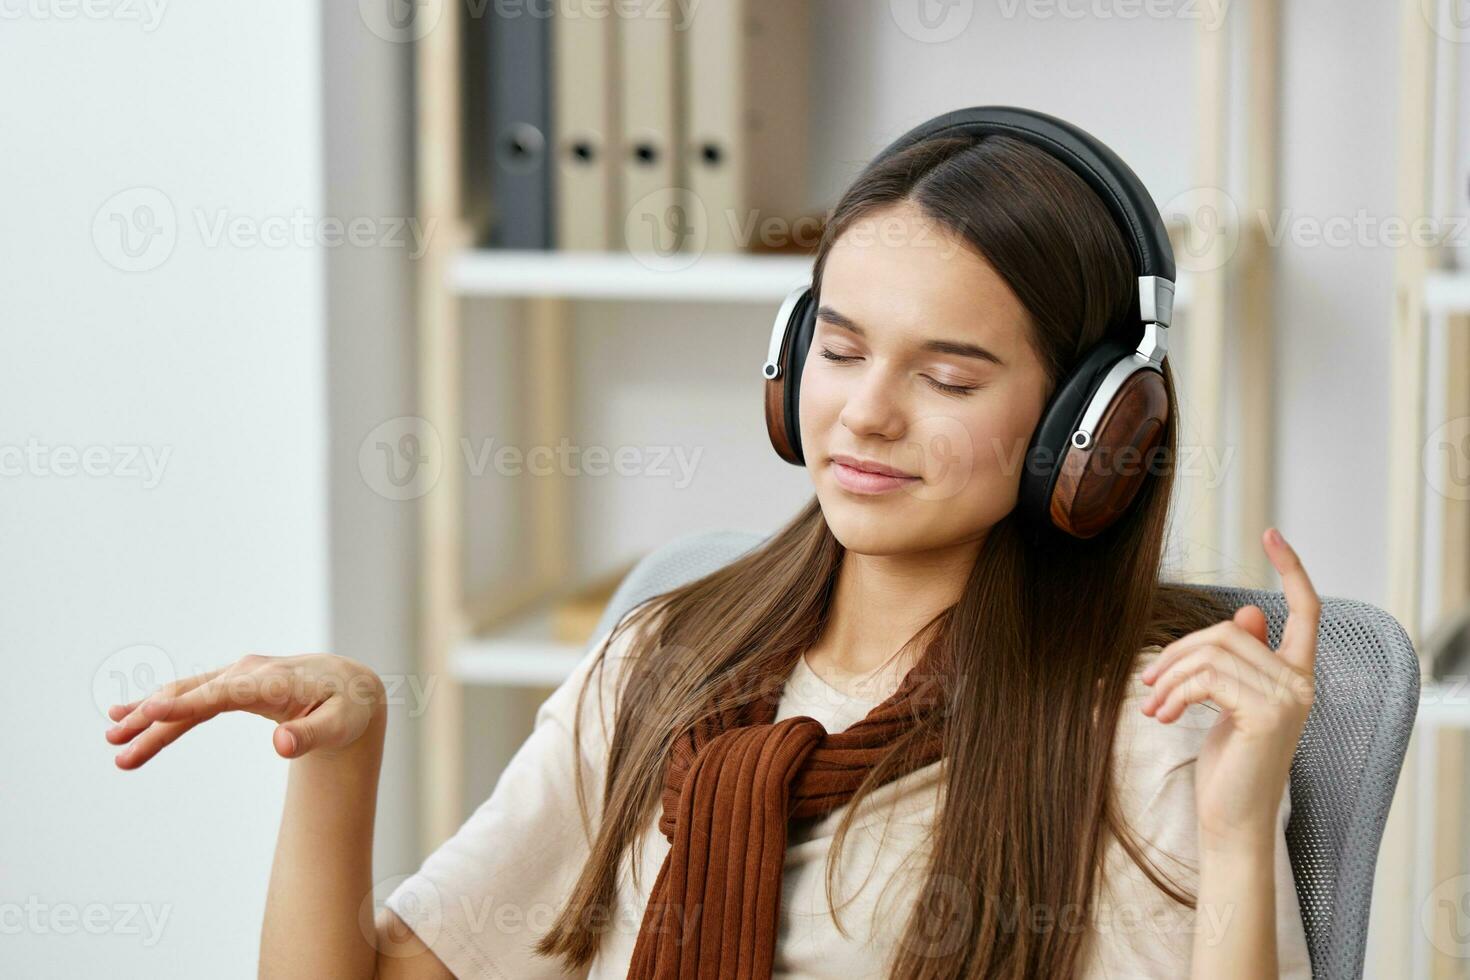 Adolescente niña auriculares silla sonrisa contento estilo de vida  meditación teléfono música 26411162 Foto de stock en Vecteezy